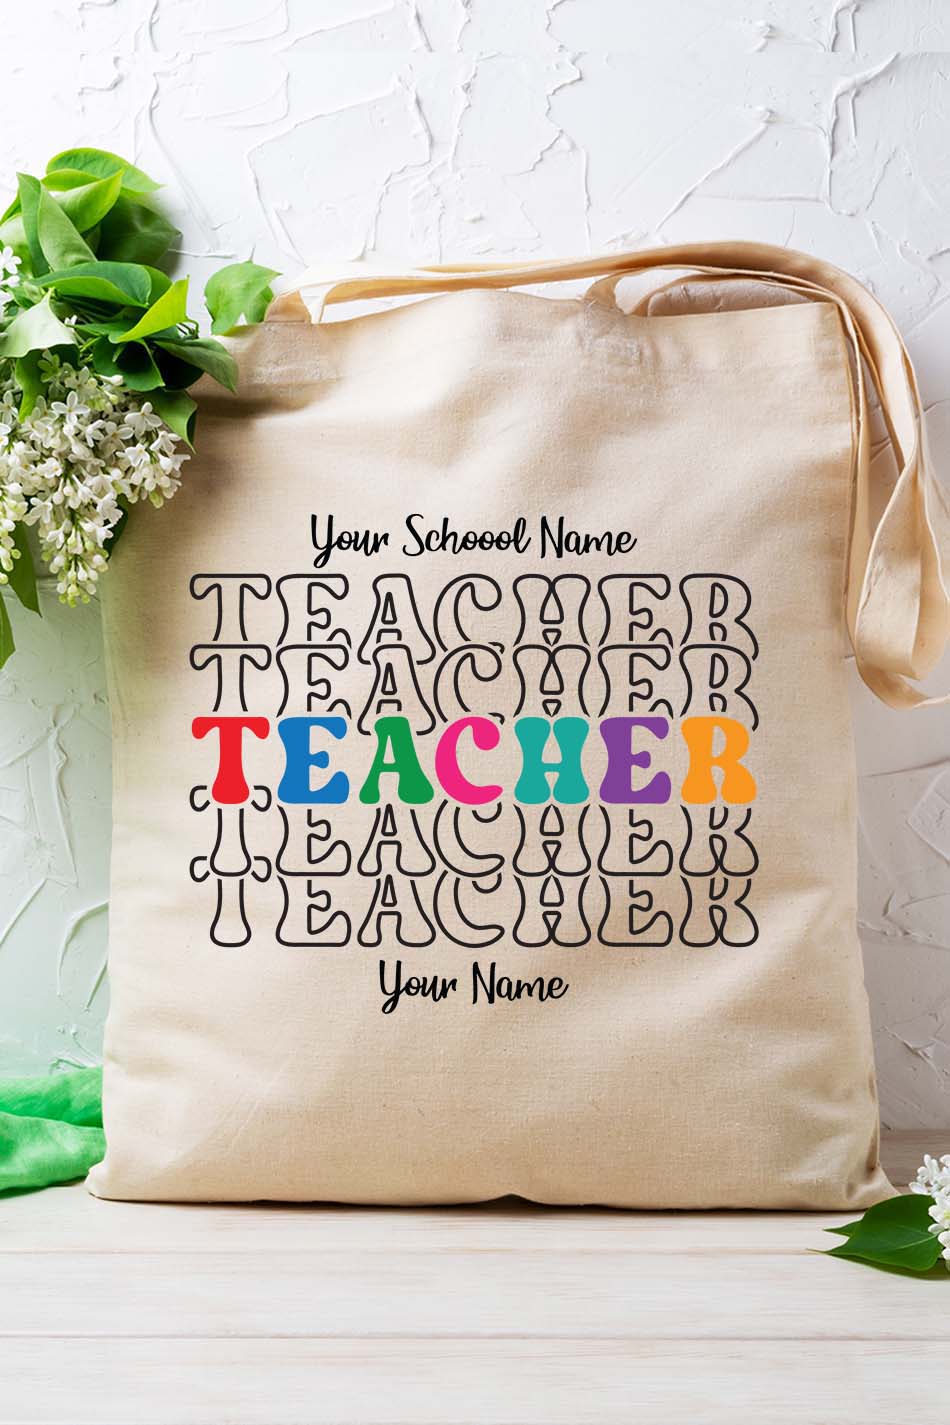 Custom Teacher Bag With Teacher and School Name